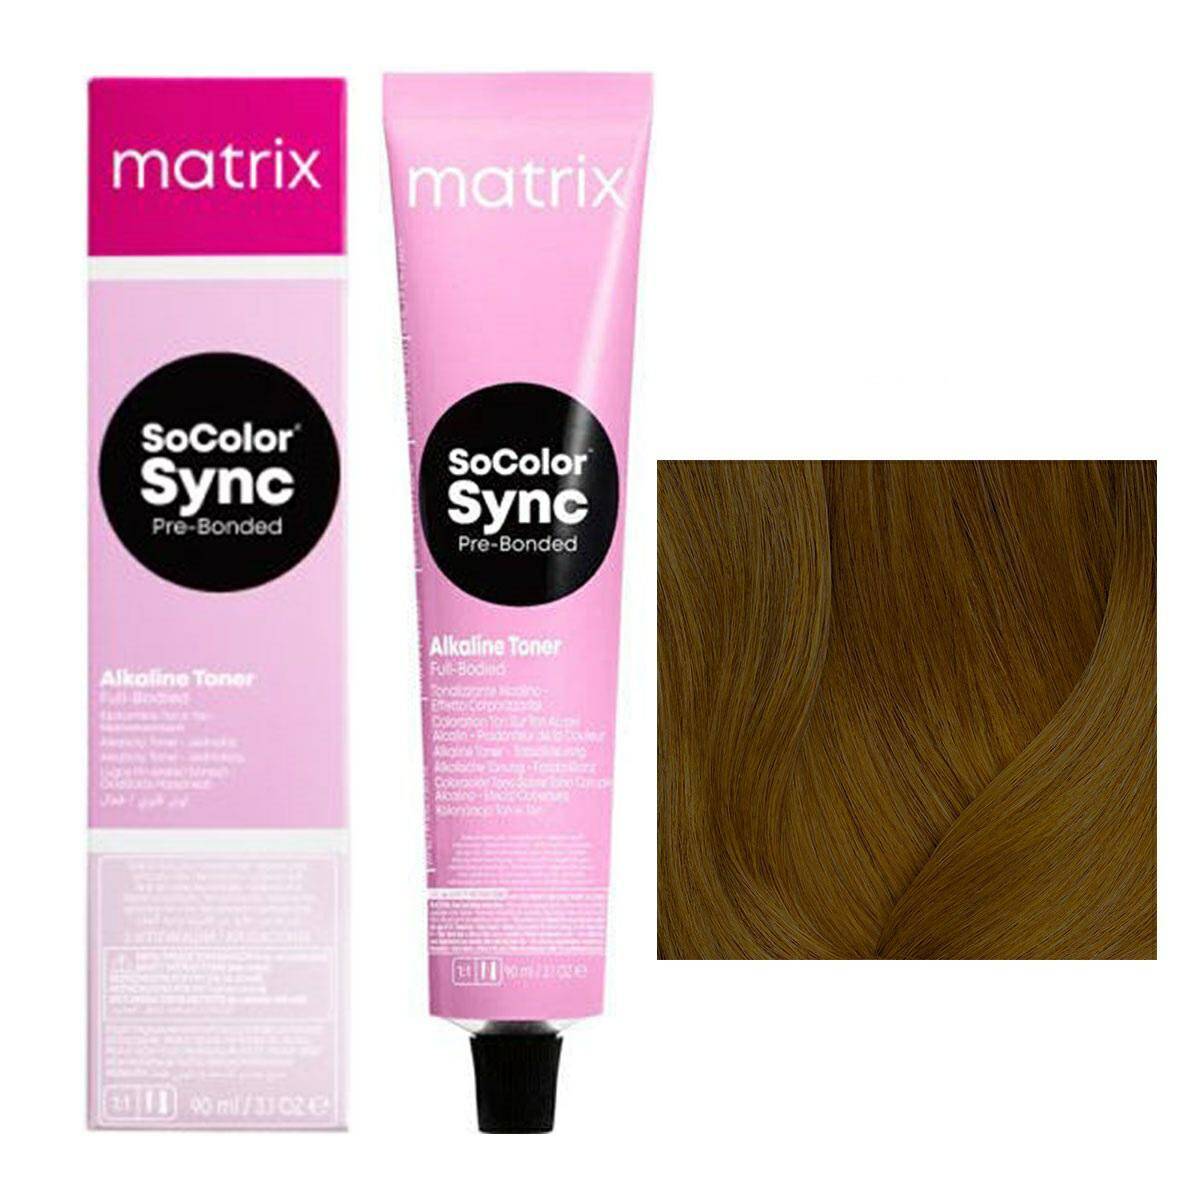 Matrix SoColor Sync Pre-Bonded Farba do włosów - 6N Naturalny ciemny blond, półtrwała koloryzacja ton w ton 90ml